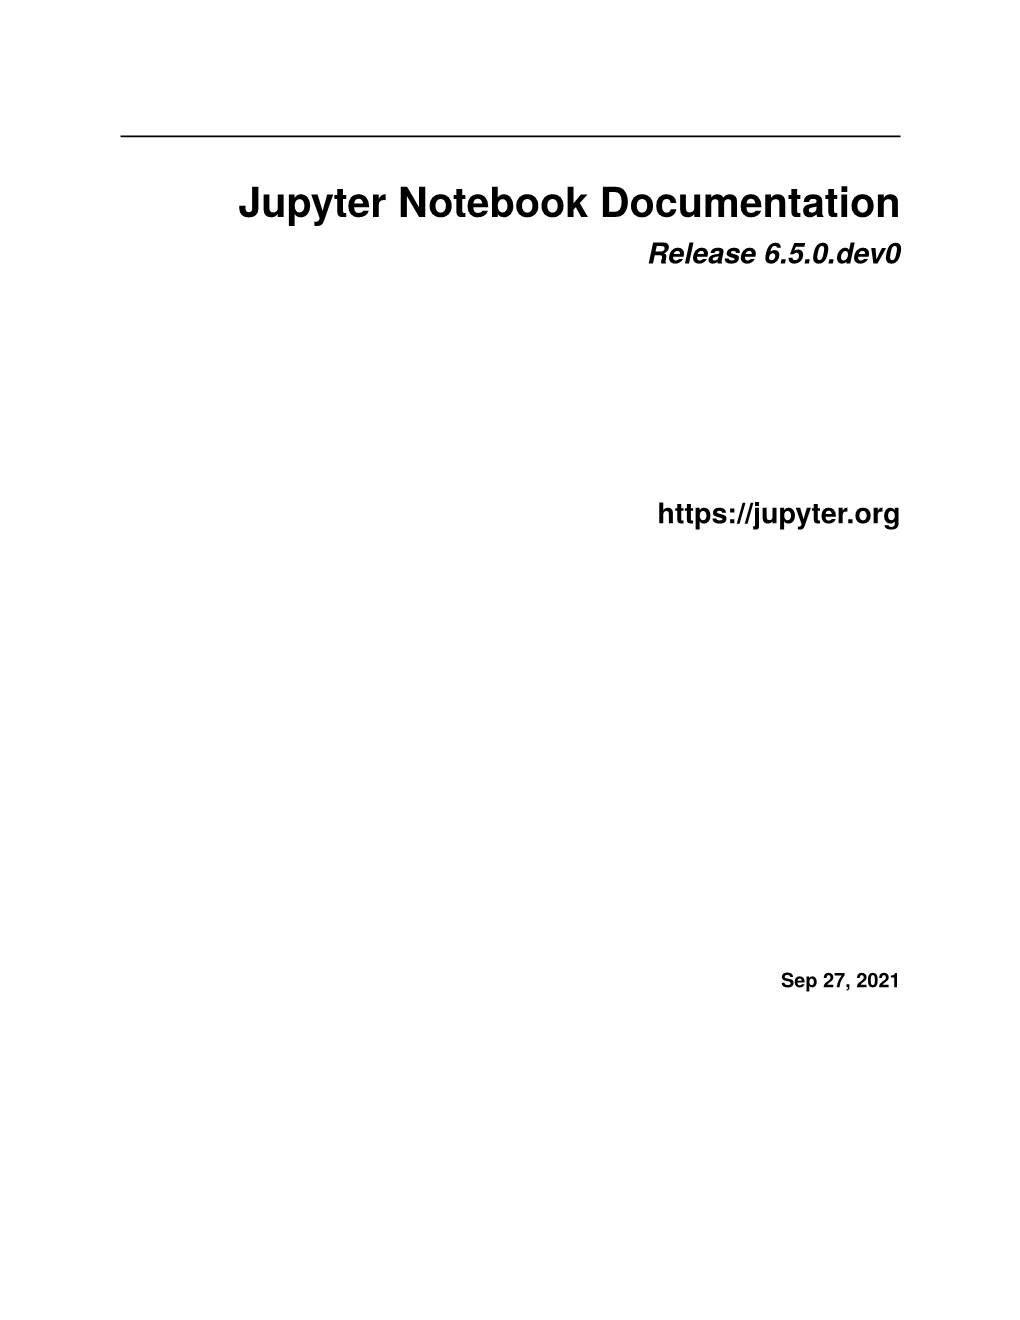 Jupyter Notebook Documentation Release 6.5.0.Dev0